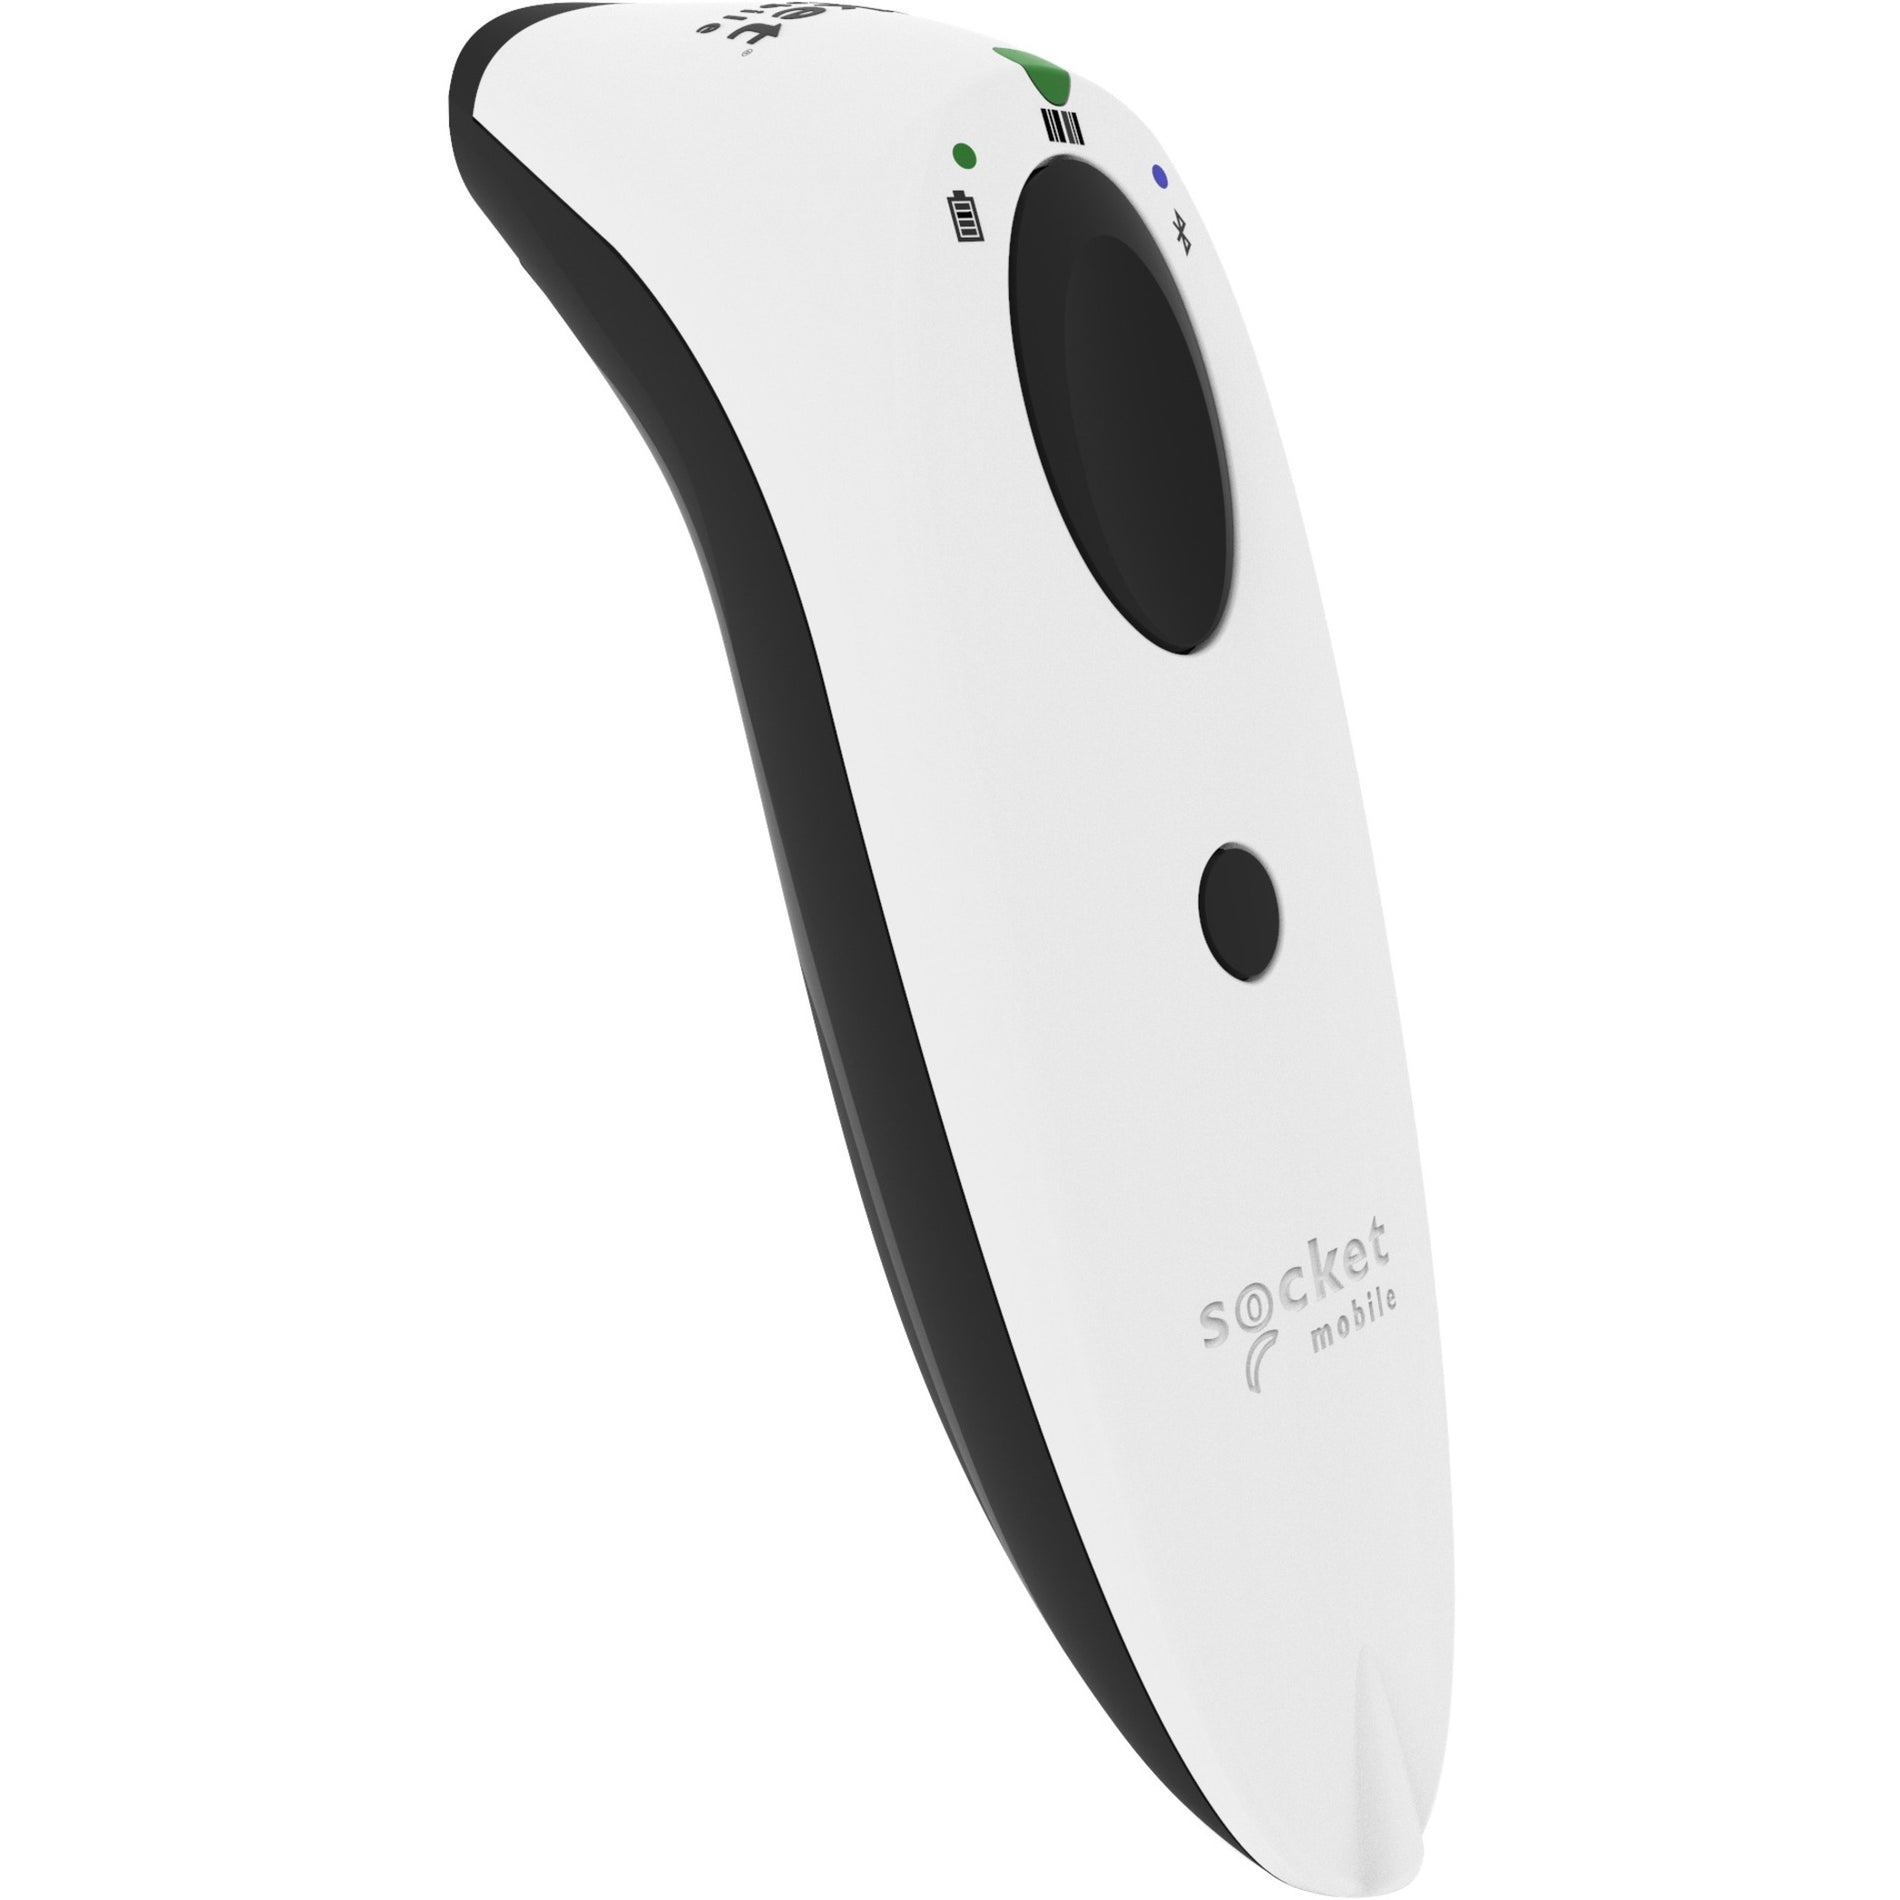 Socket Mobile CX3397-1855 SocketScan S700 1D Imager Barcode Scanner, White